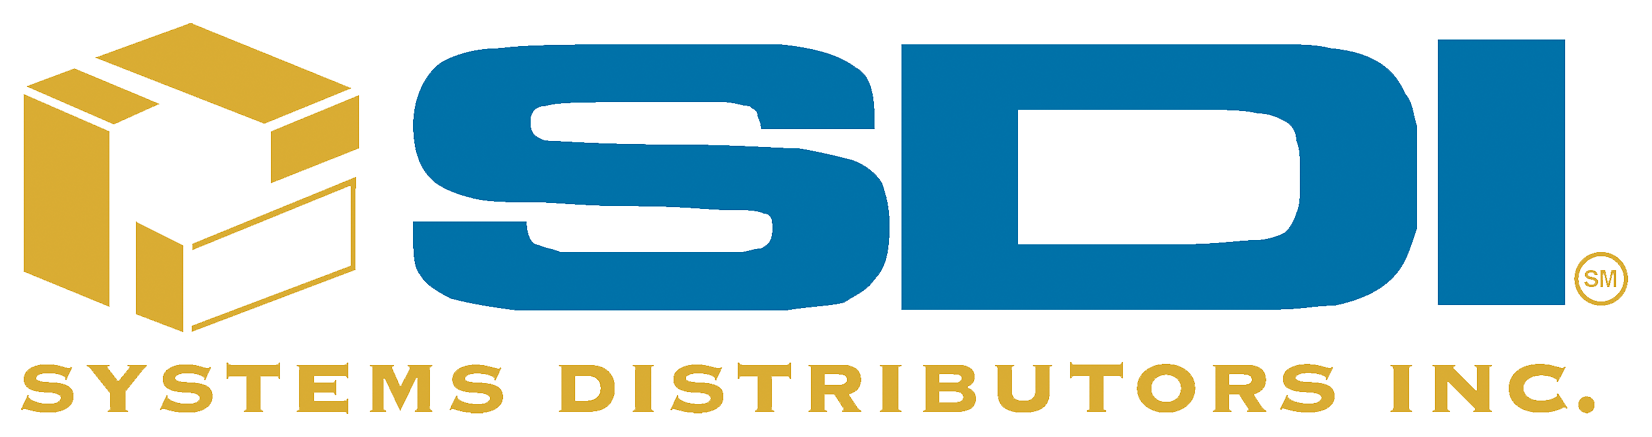 SDI Meetings & Incentives: 2021 CMI 25 | MeetingsNet